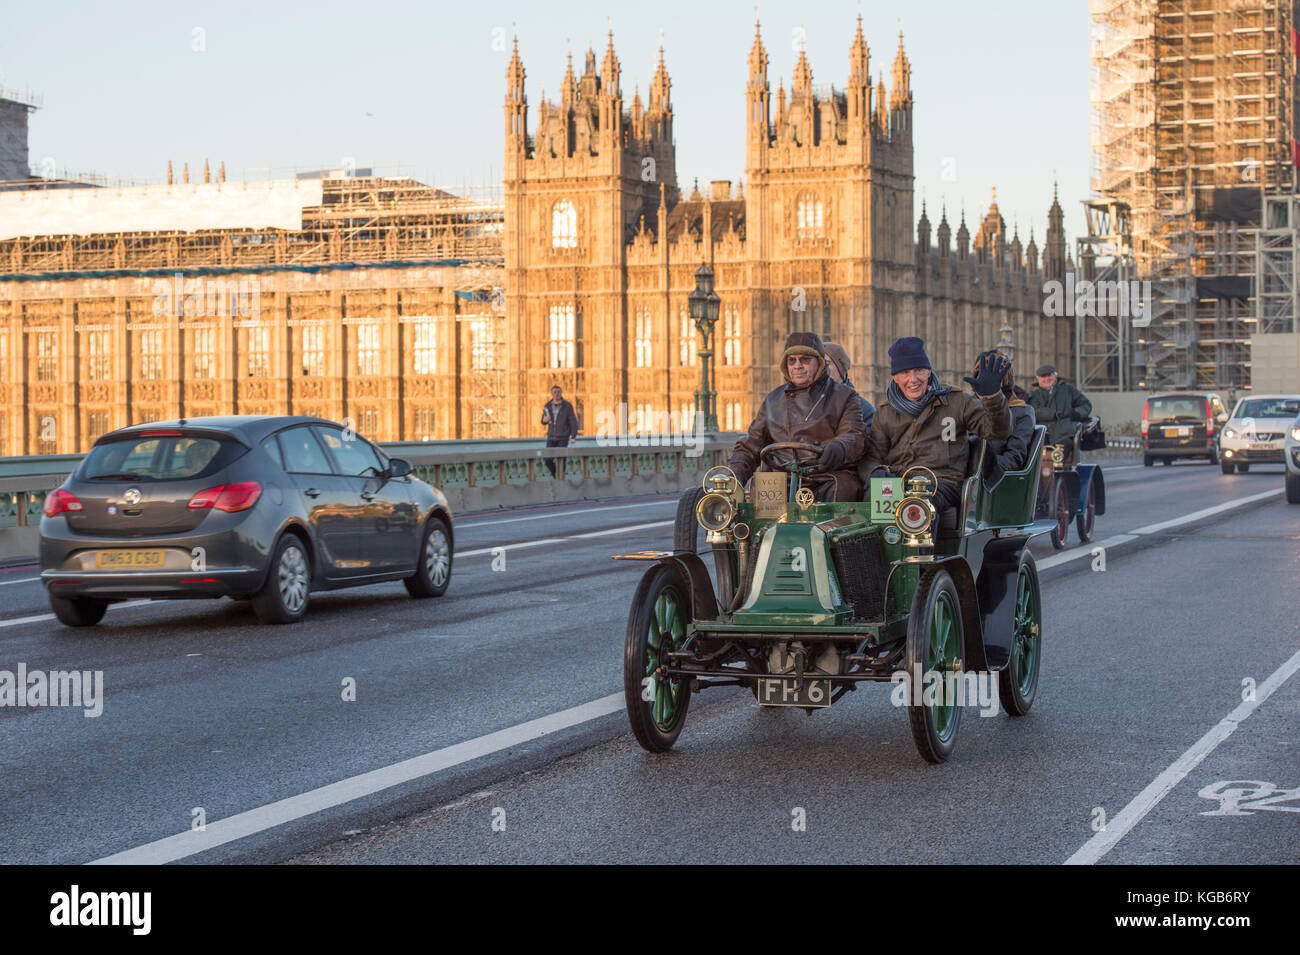 5 novembre 2017. Bonhams de Londres à Brighton, la course automobile vétéran, la plus longue course automobile au monde, 1902 Renault sur le pont de Westminster. Banque D'Images